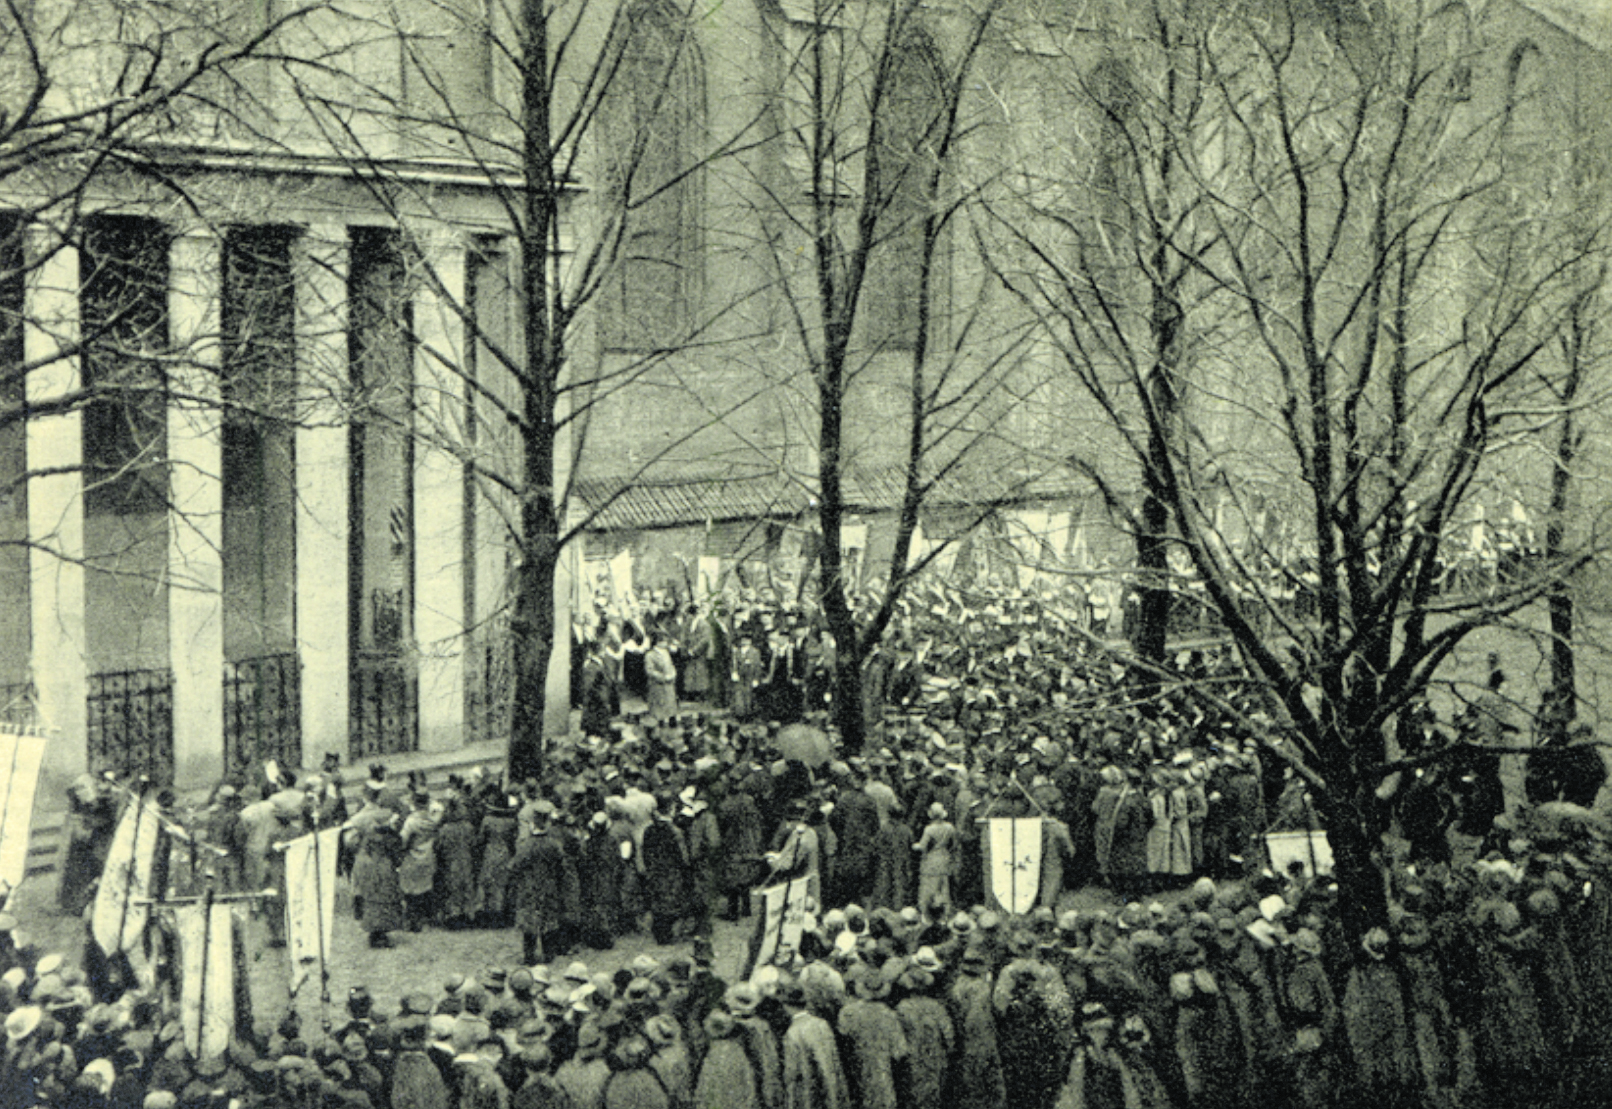 Einer der Höhepunkte der Feierlichkeiten: Feierliche Übergabe der neuen Grabstätte Immanuel Kants am 21. April 1924